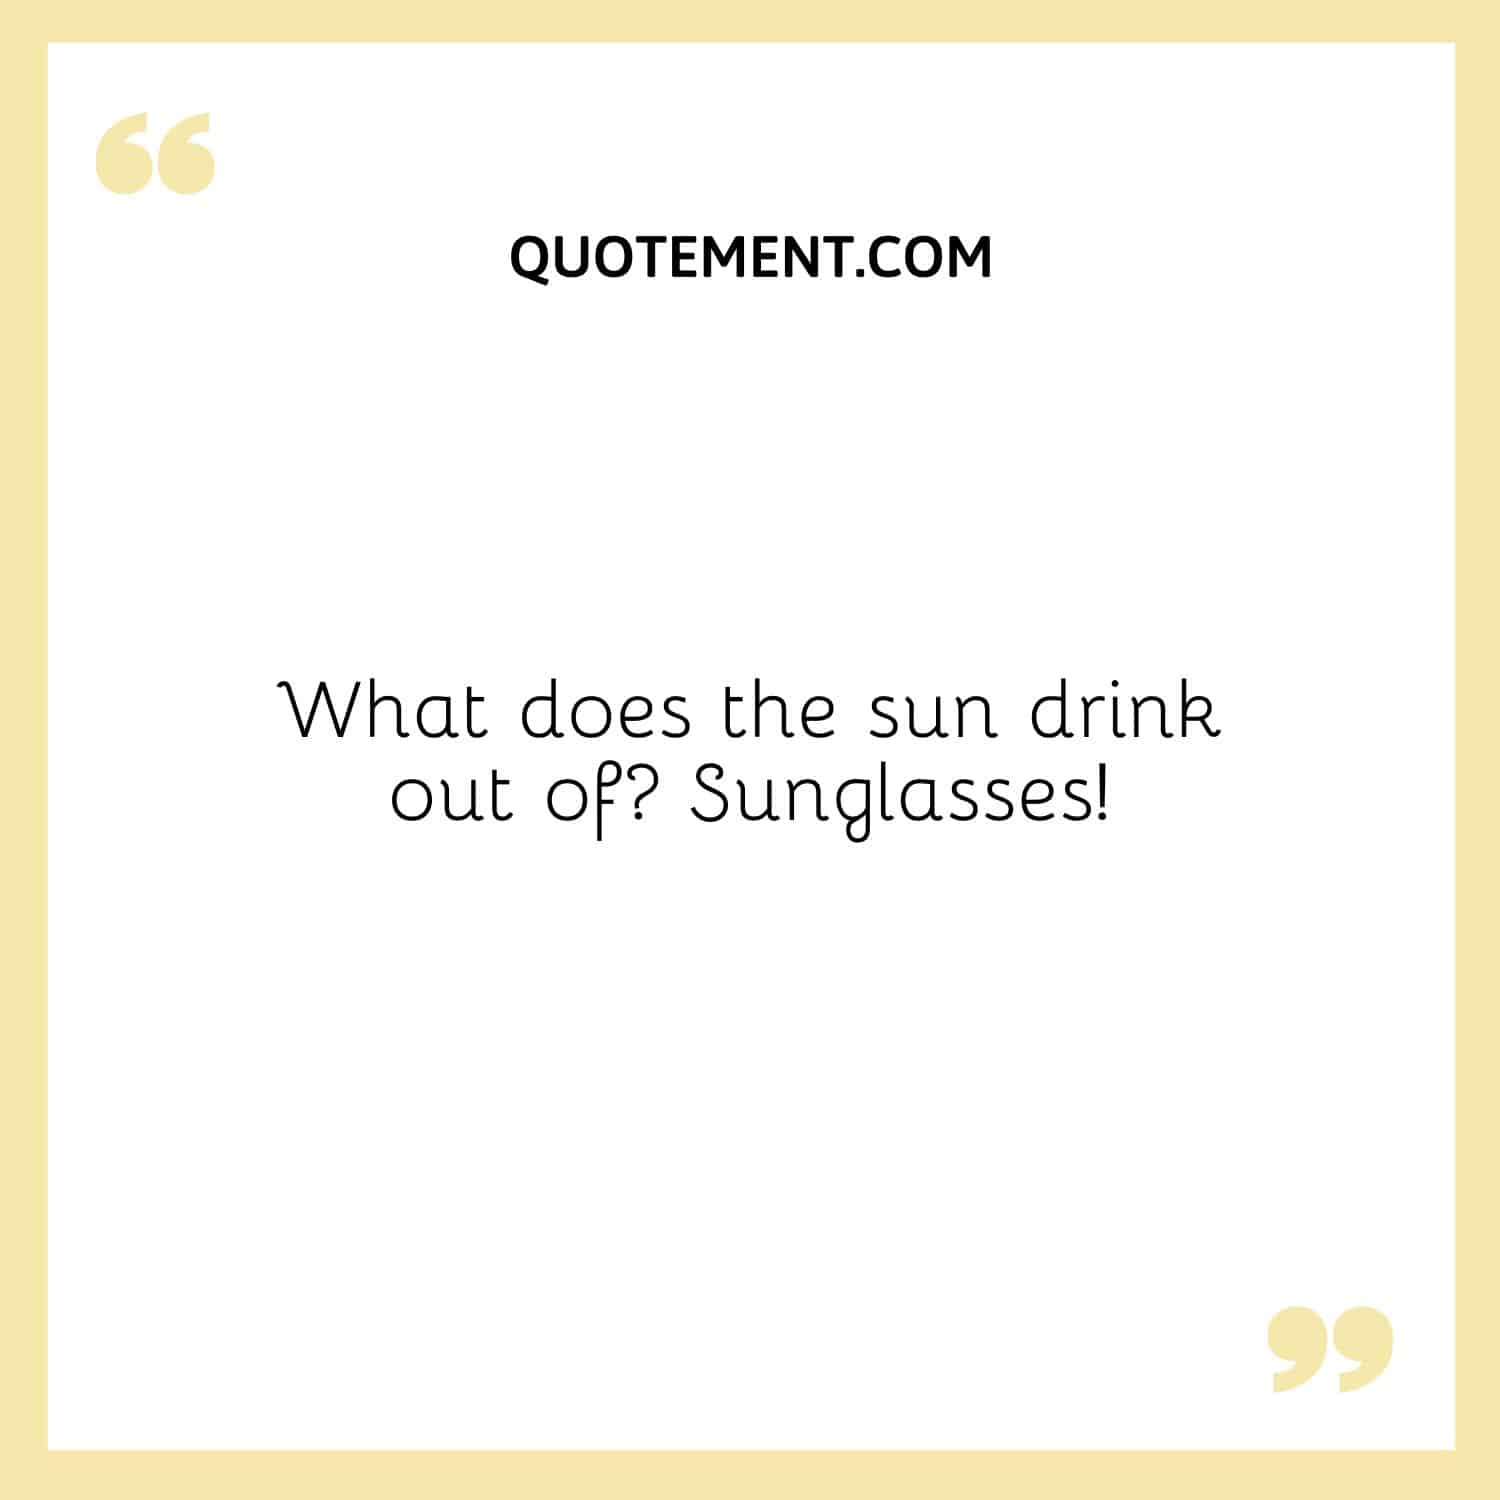 ¿Qué se bebe el sol de las gafas de sol?